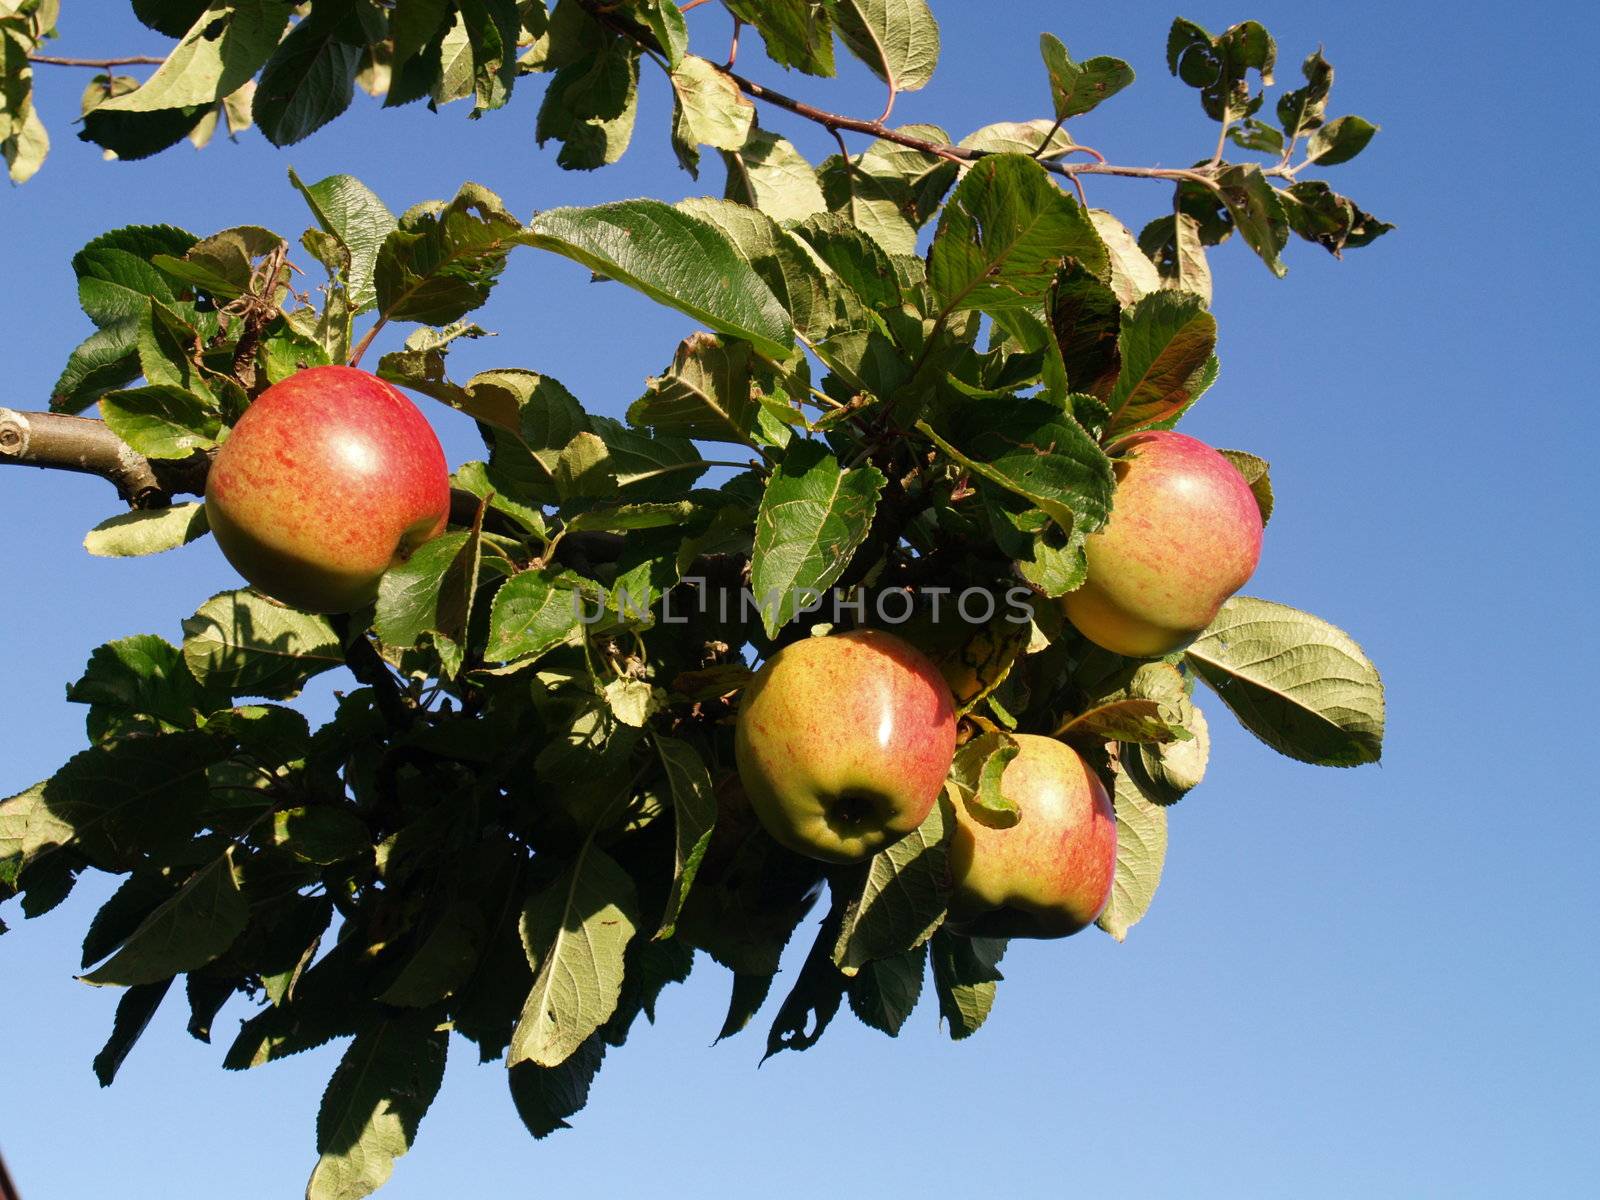 apple tree by viviolsen